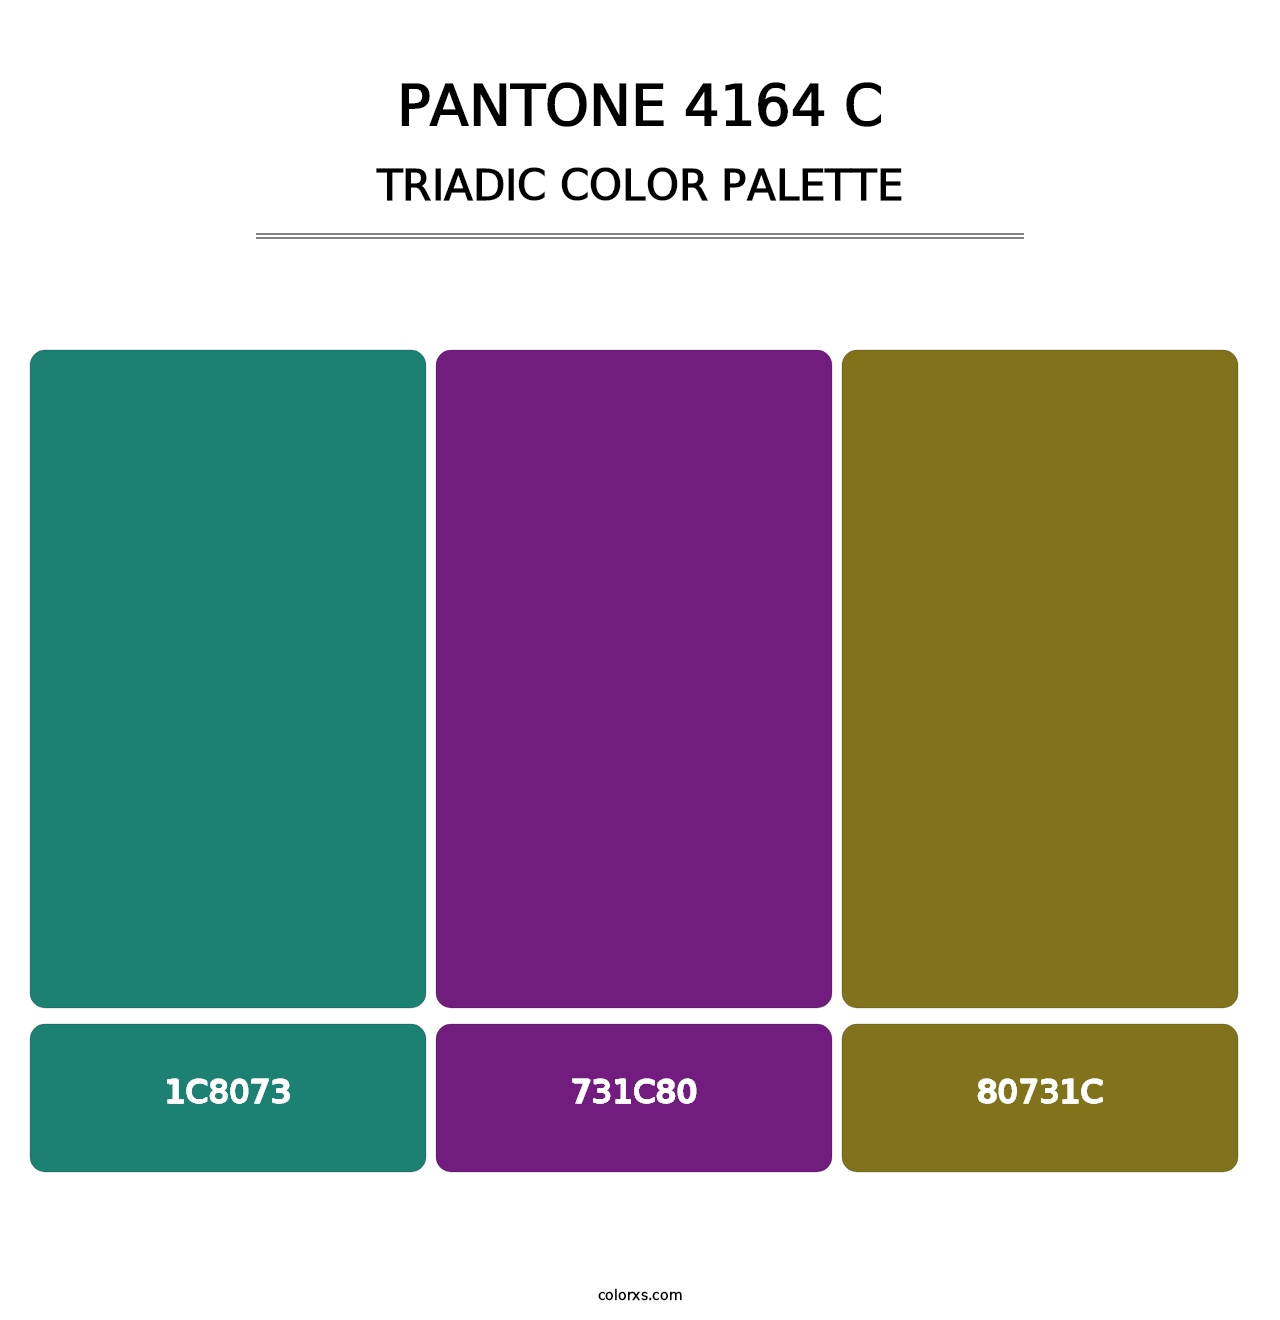 PANTONE 4164 C - Triadic Color Palette